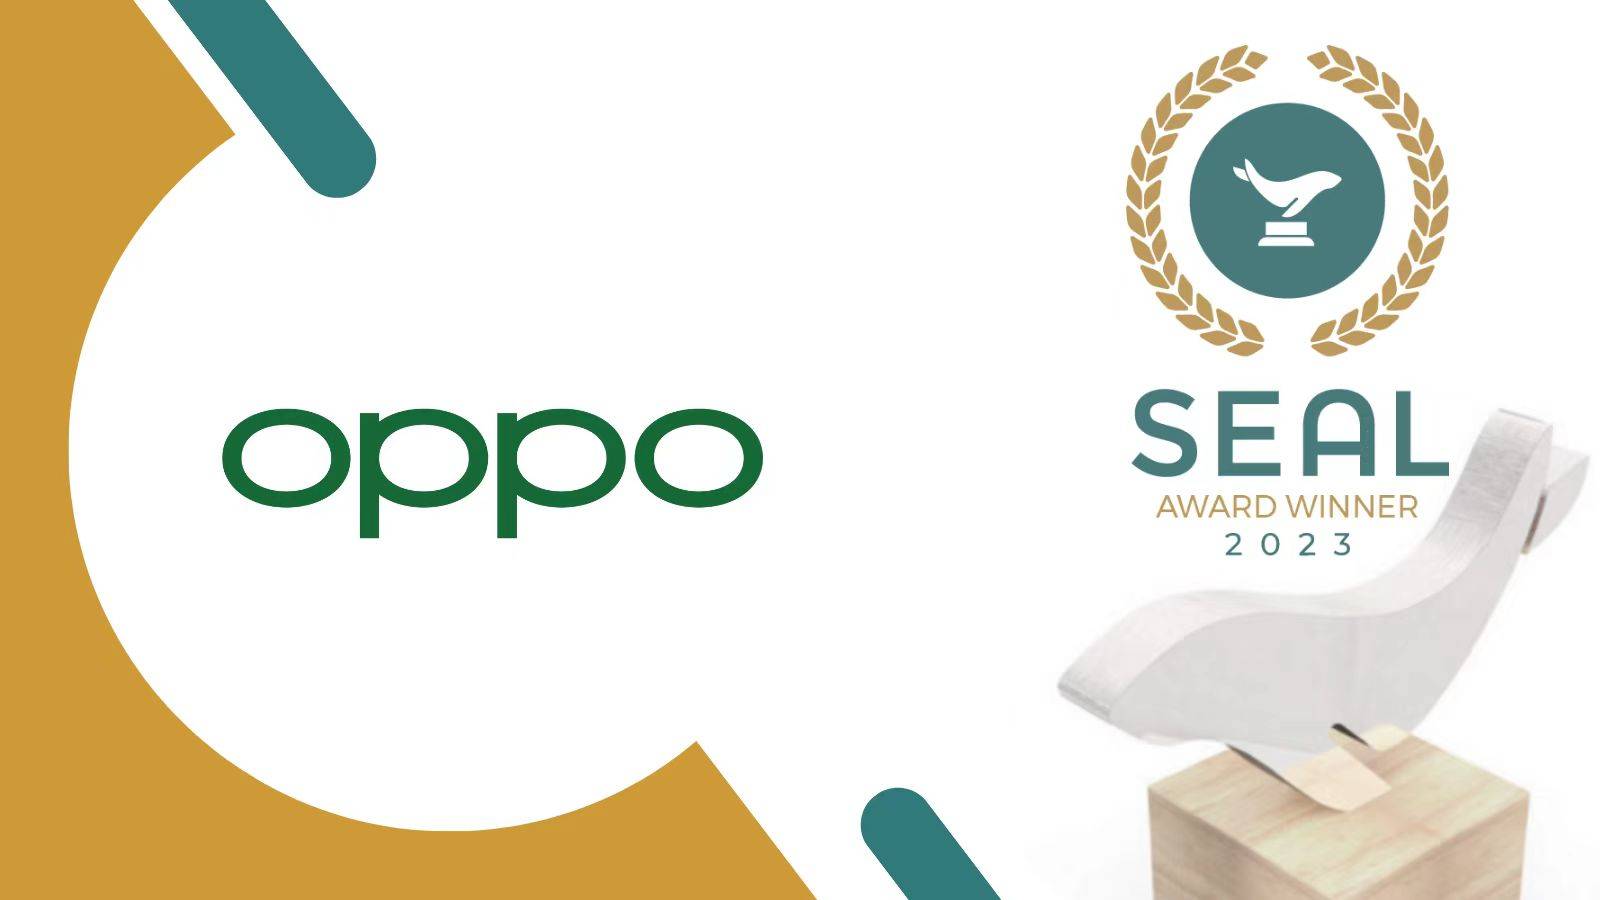 手机电池品牌:OPPO夺得SEAL可持续发展产品奖，引领行业迈向绿色发展